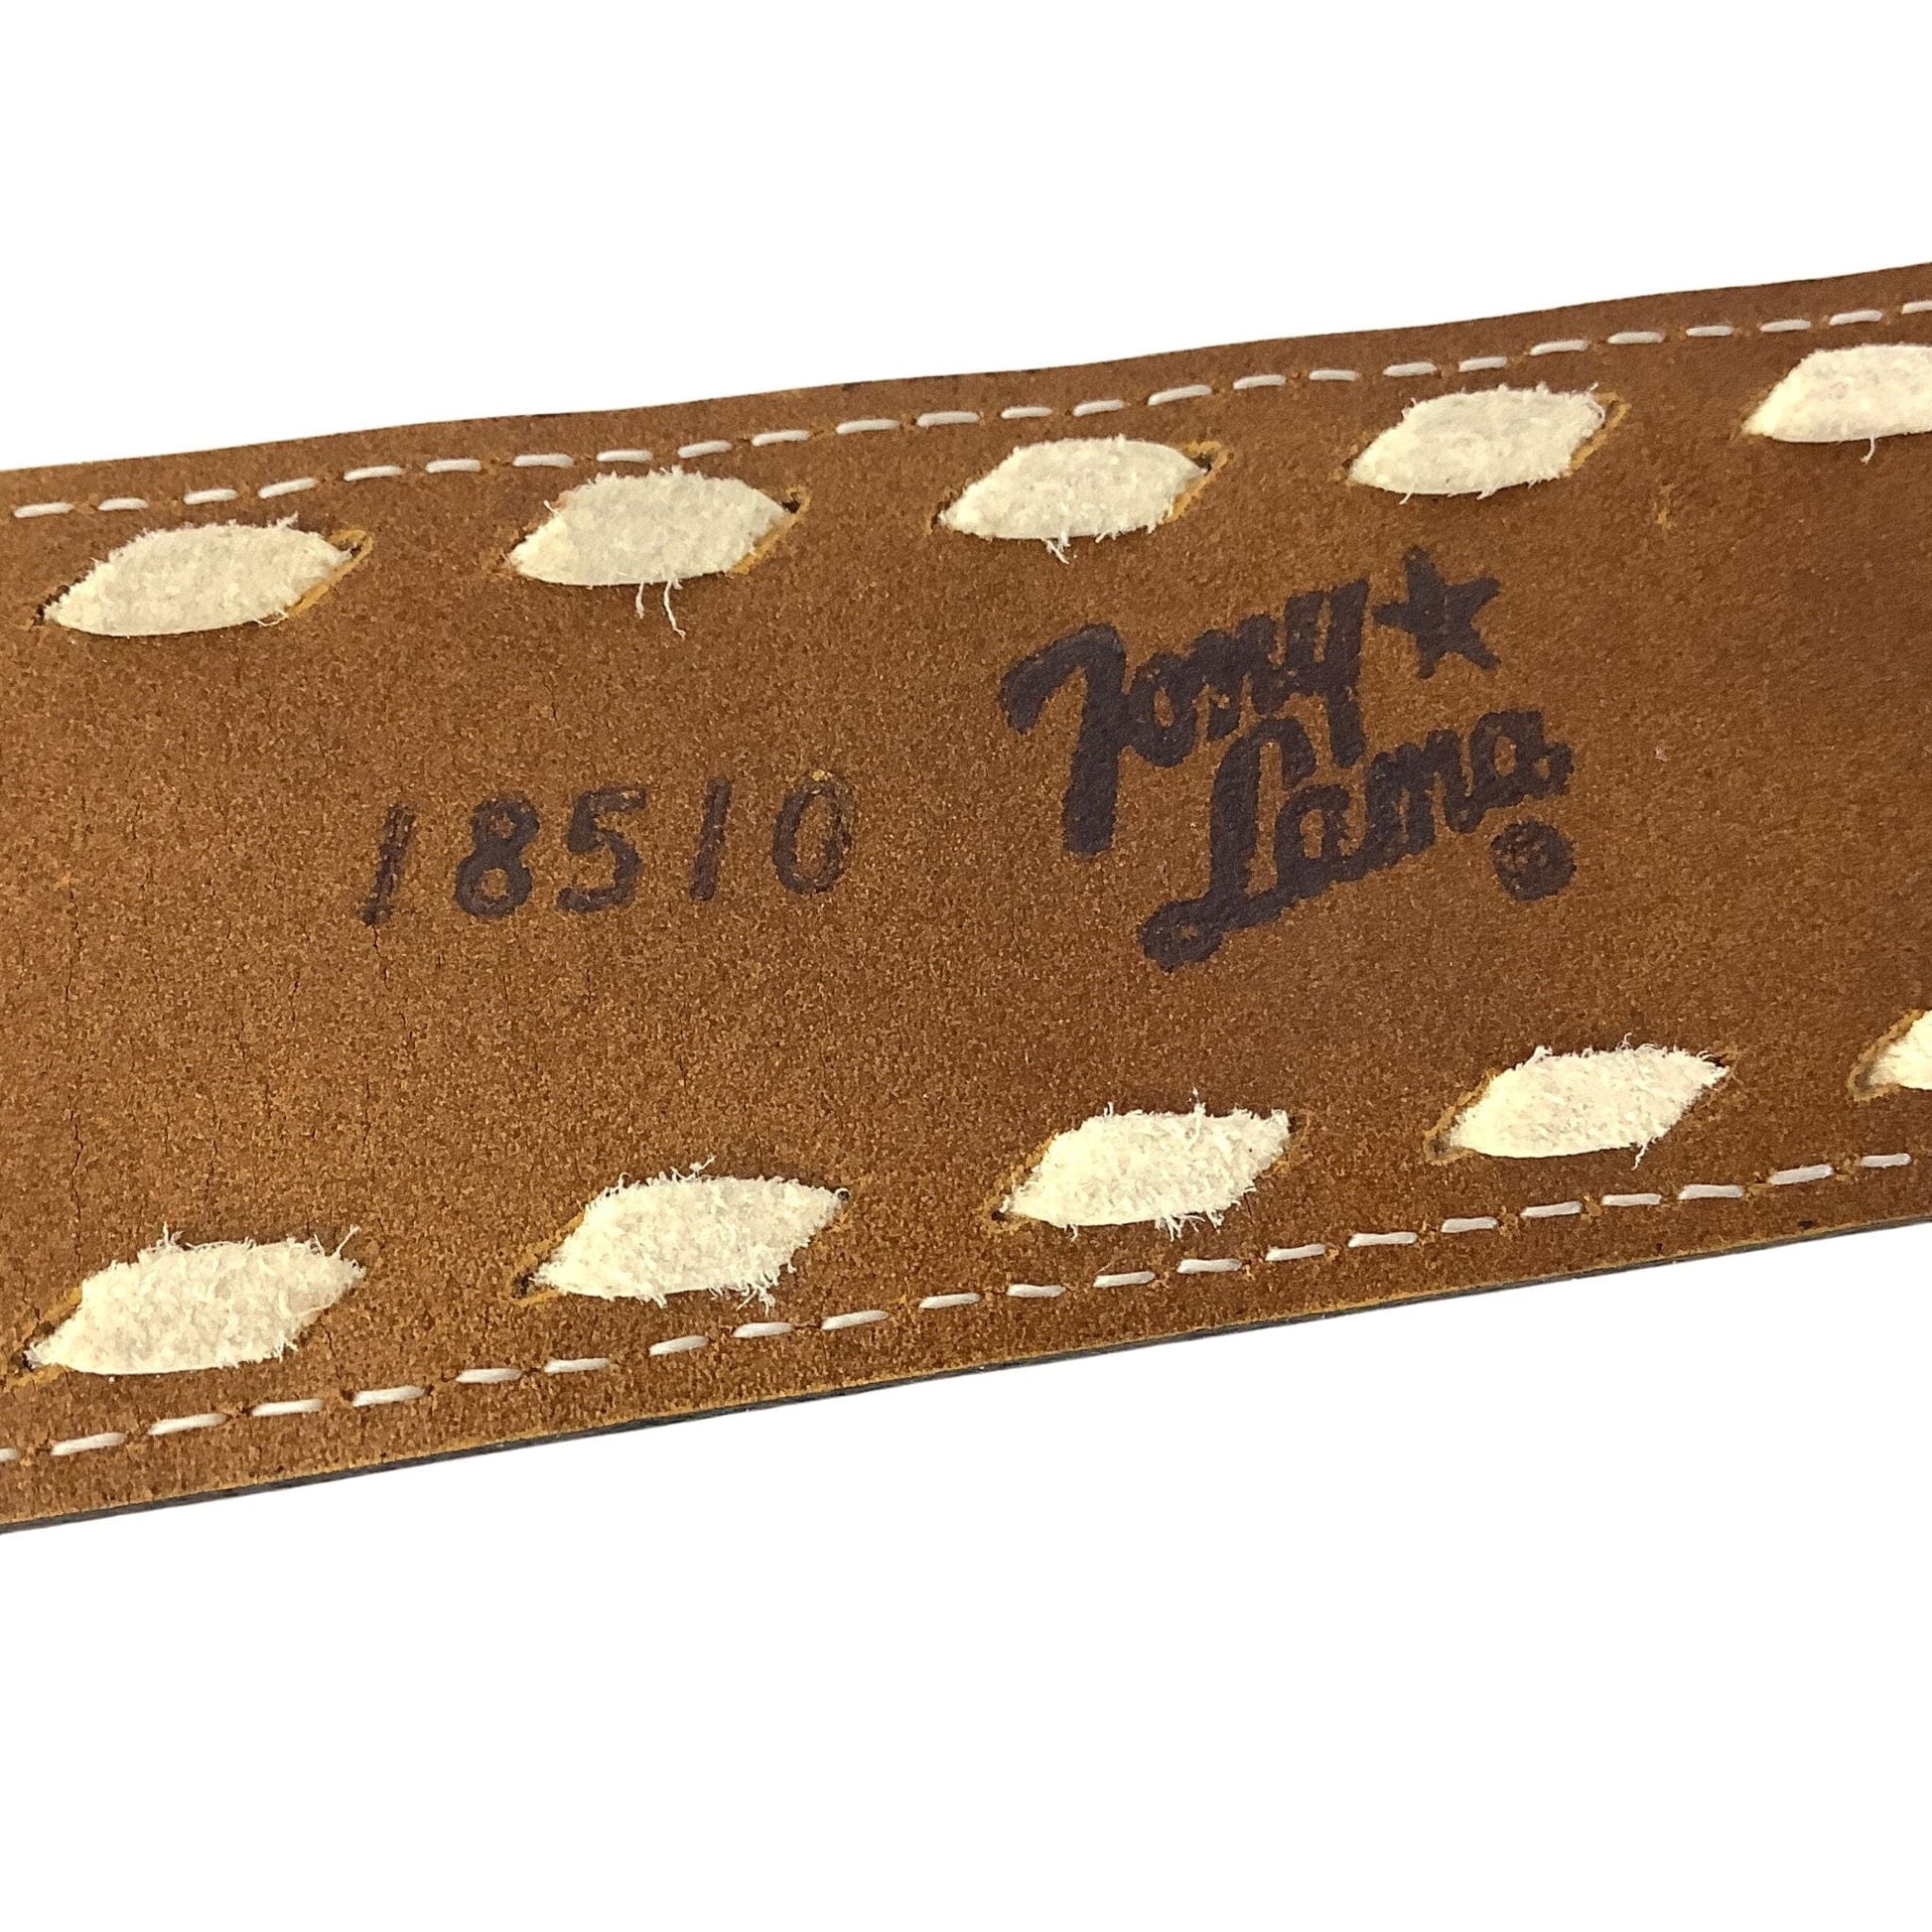 New Old Stock Tony Lama Belt Orange / Leather / Vintage 1970s